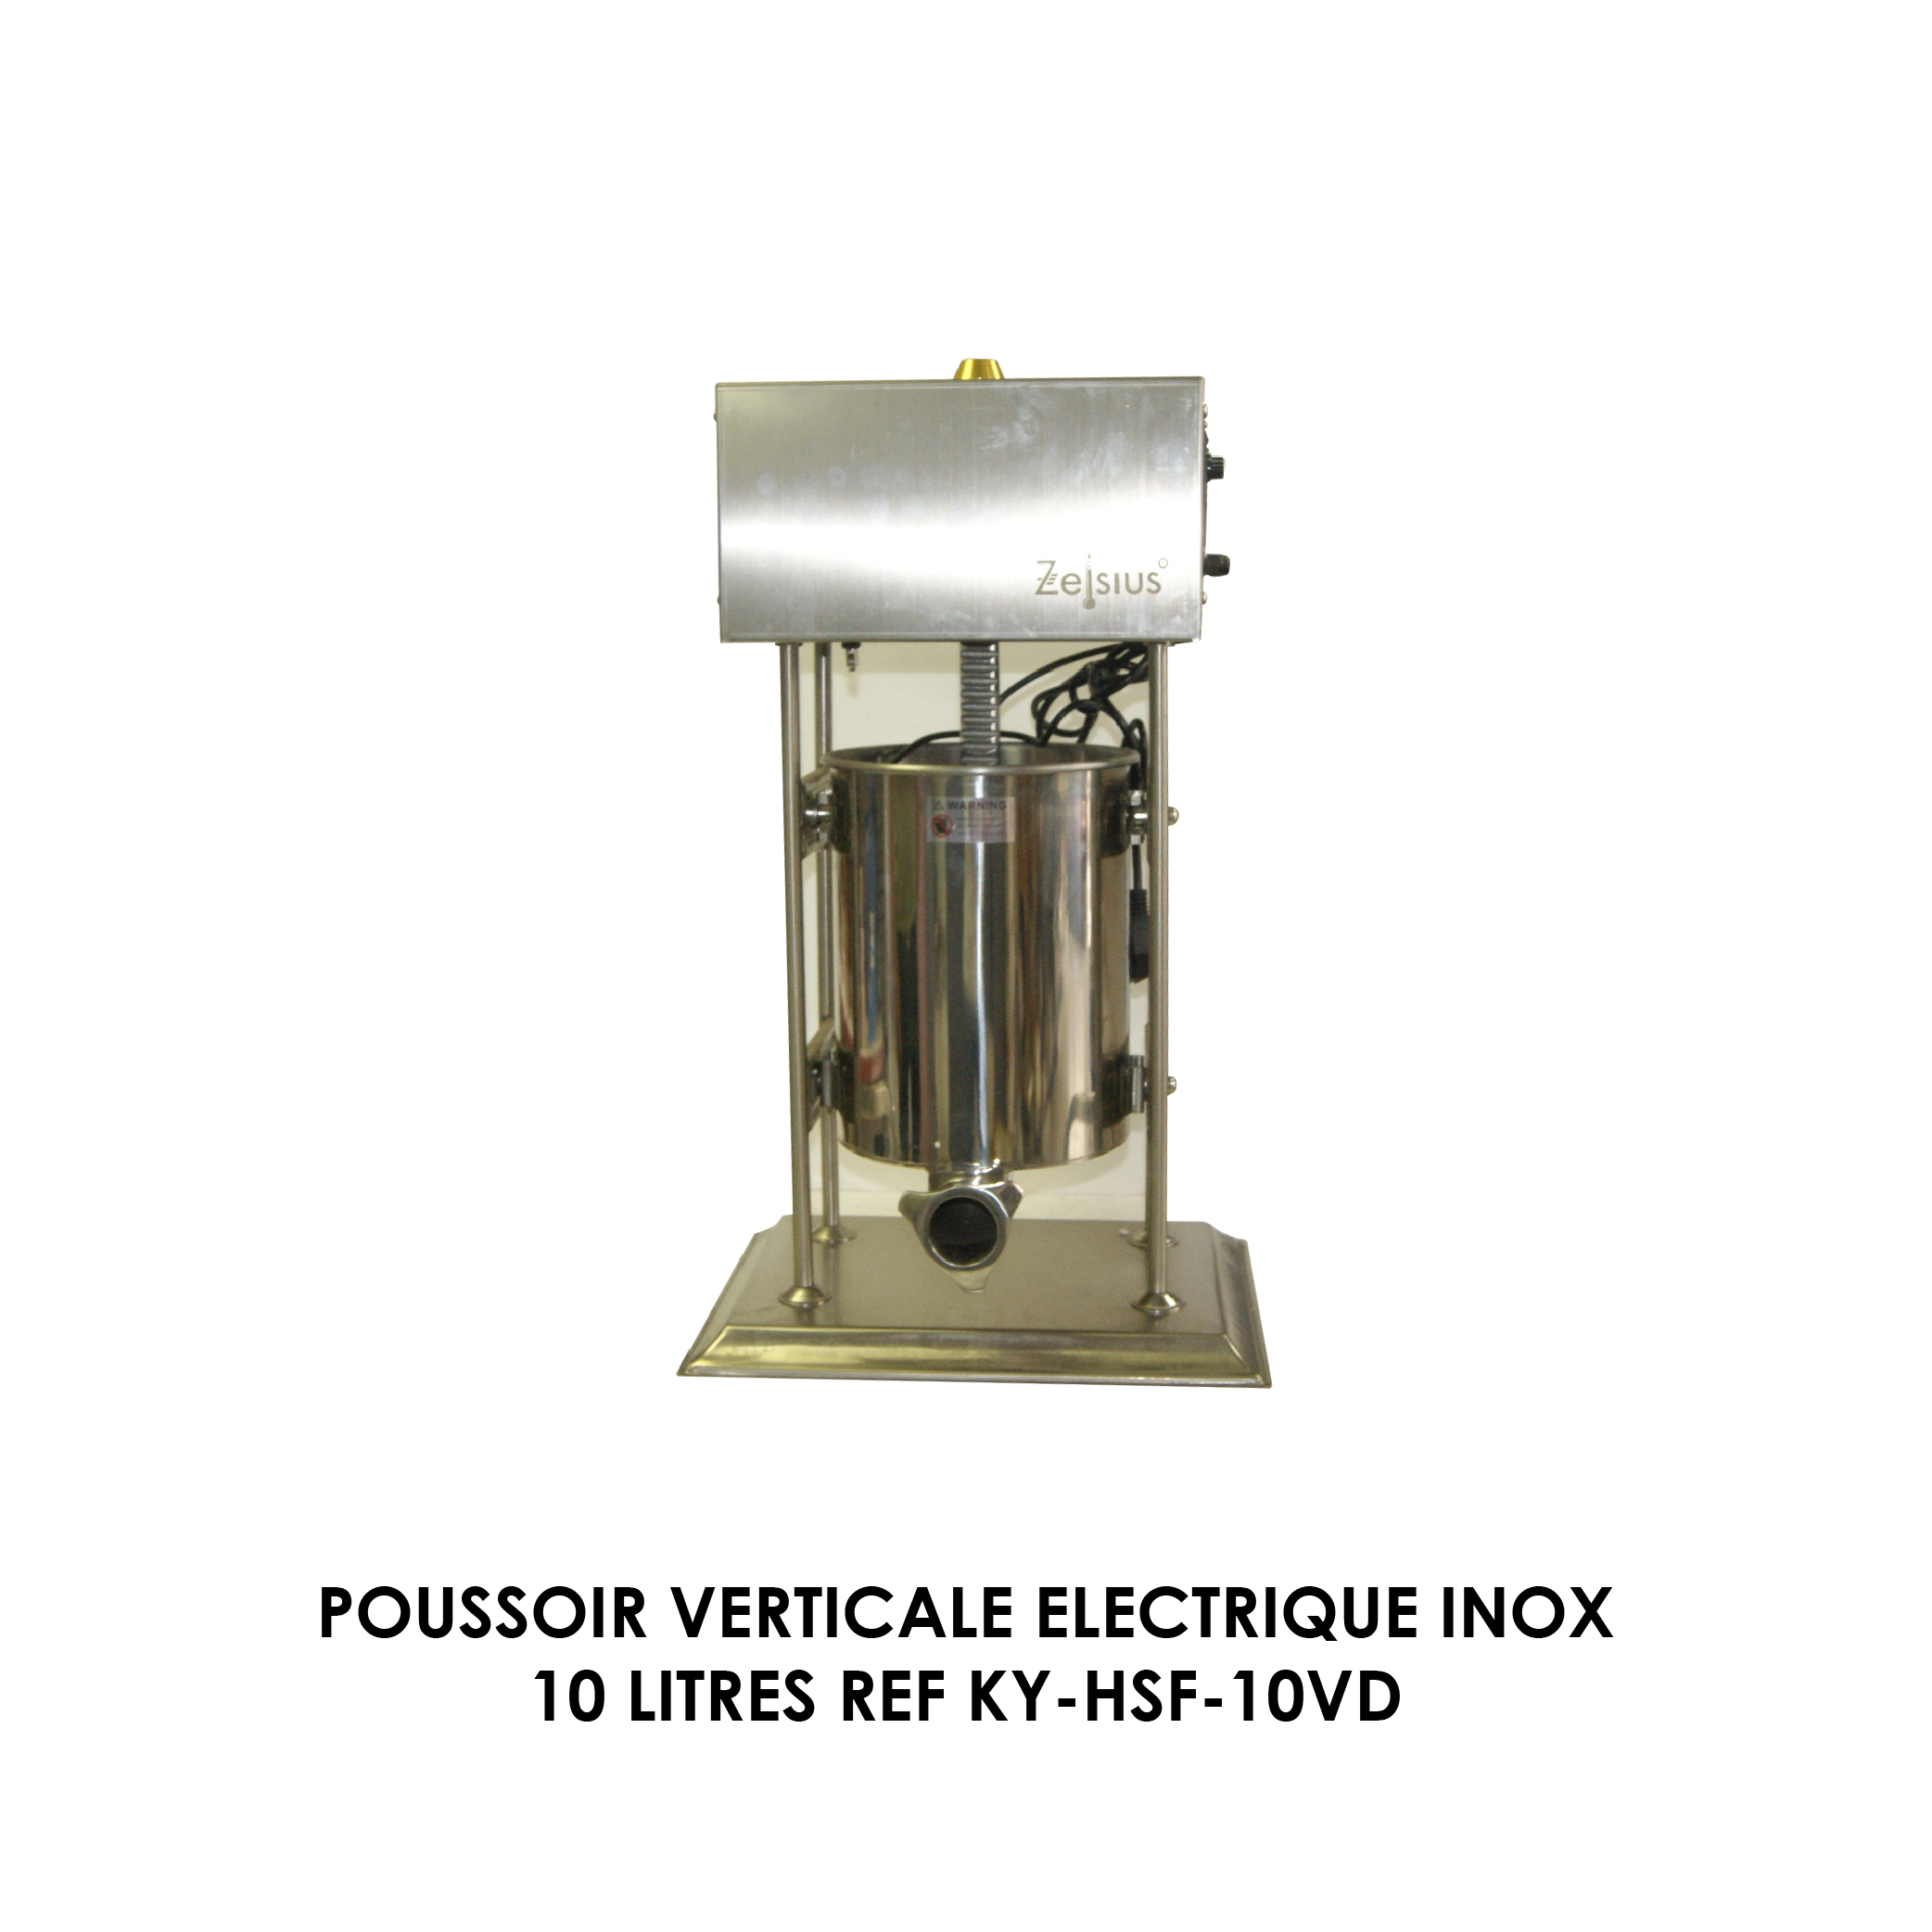 POUSSOIR VERTICALE ELECTRIQUE INOX 10 LITRES REF KY-HSF-10VD